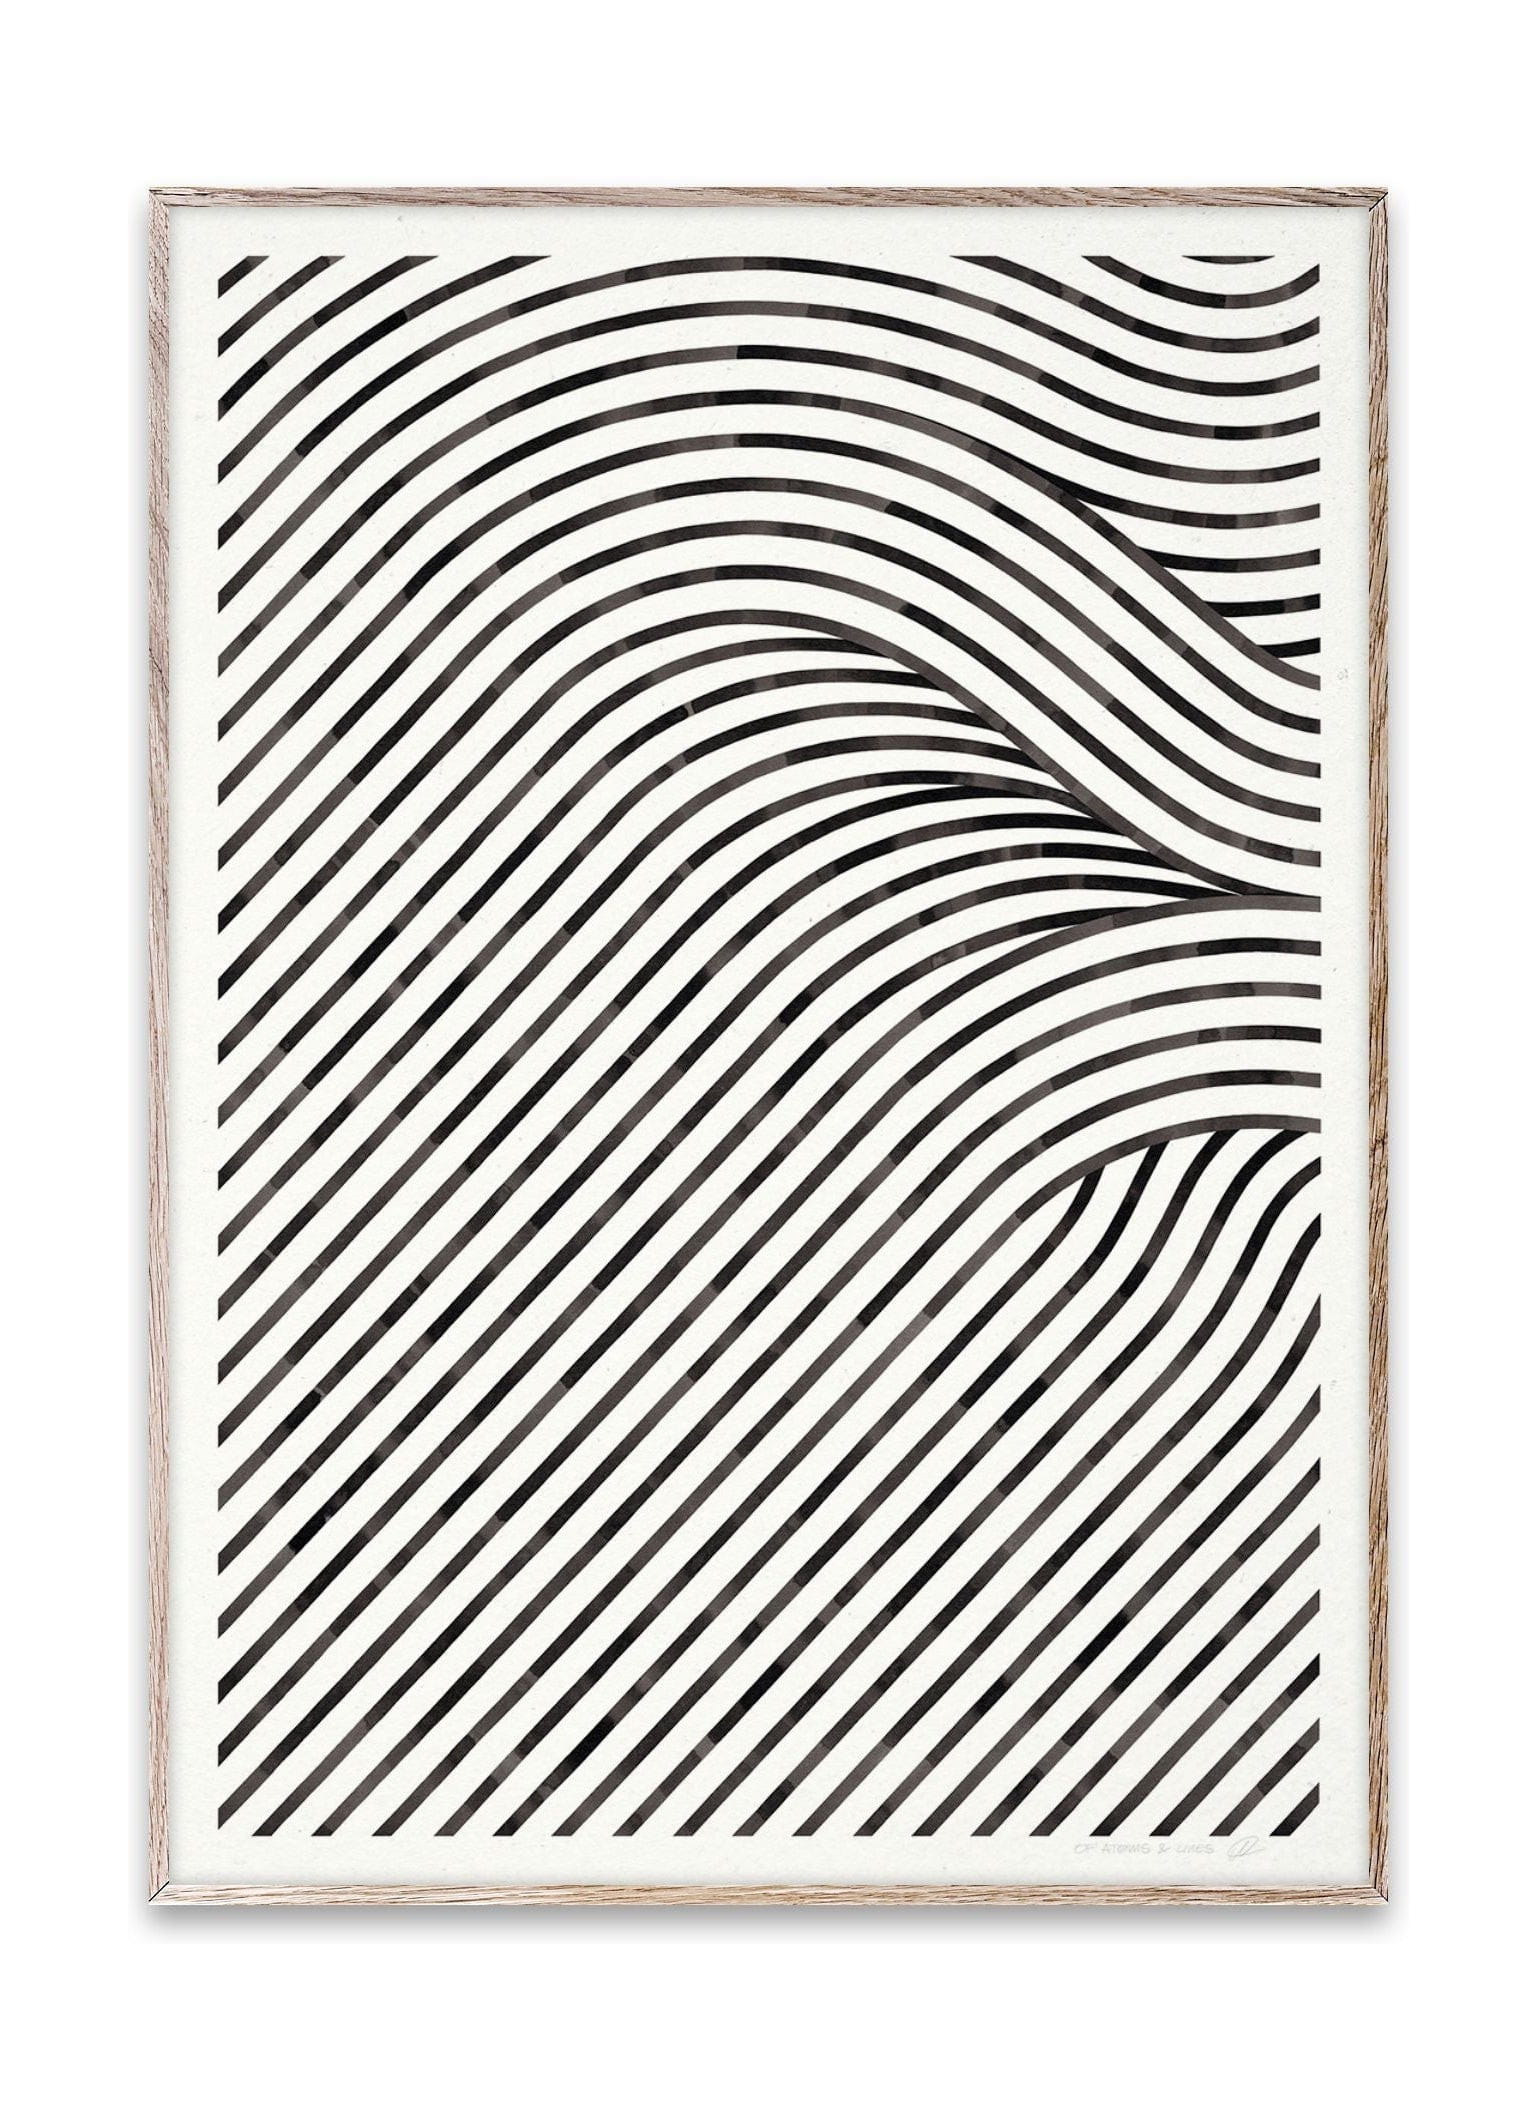 Campos cuánticos colectivos colectivos de papel 02 Póster, 70 x100 cm